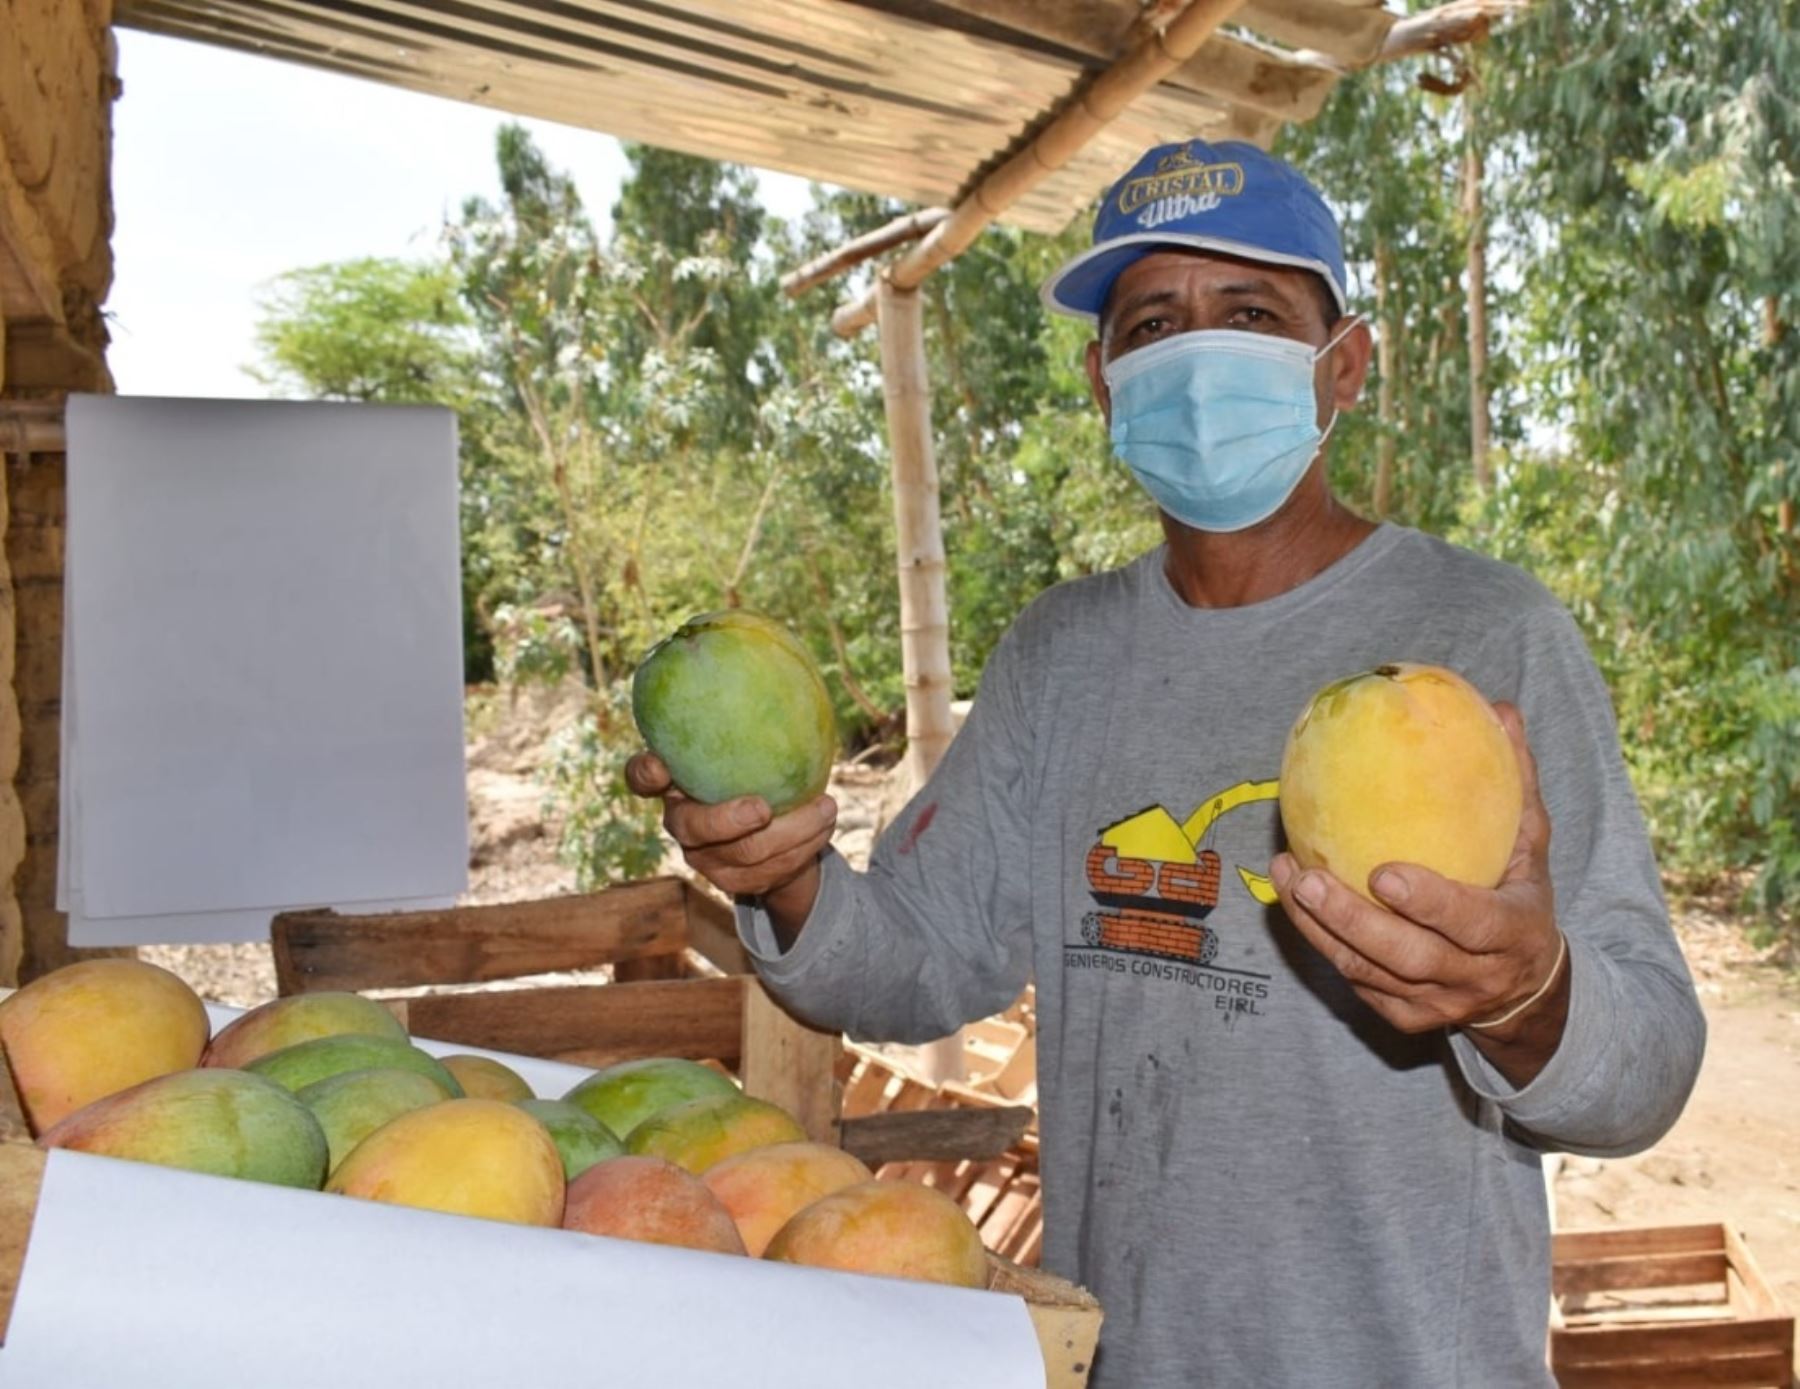 Los productores de la agricultura familiar son los principales aportantes en la cadena agroexportadora del mango, la cotizada fruta peruana que tiene gran demanda en el mundo, destacó Senasa. ANDINA/Difusión